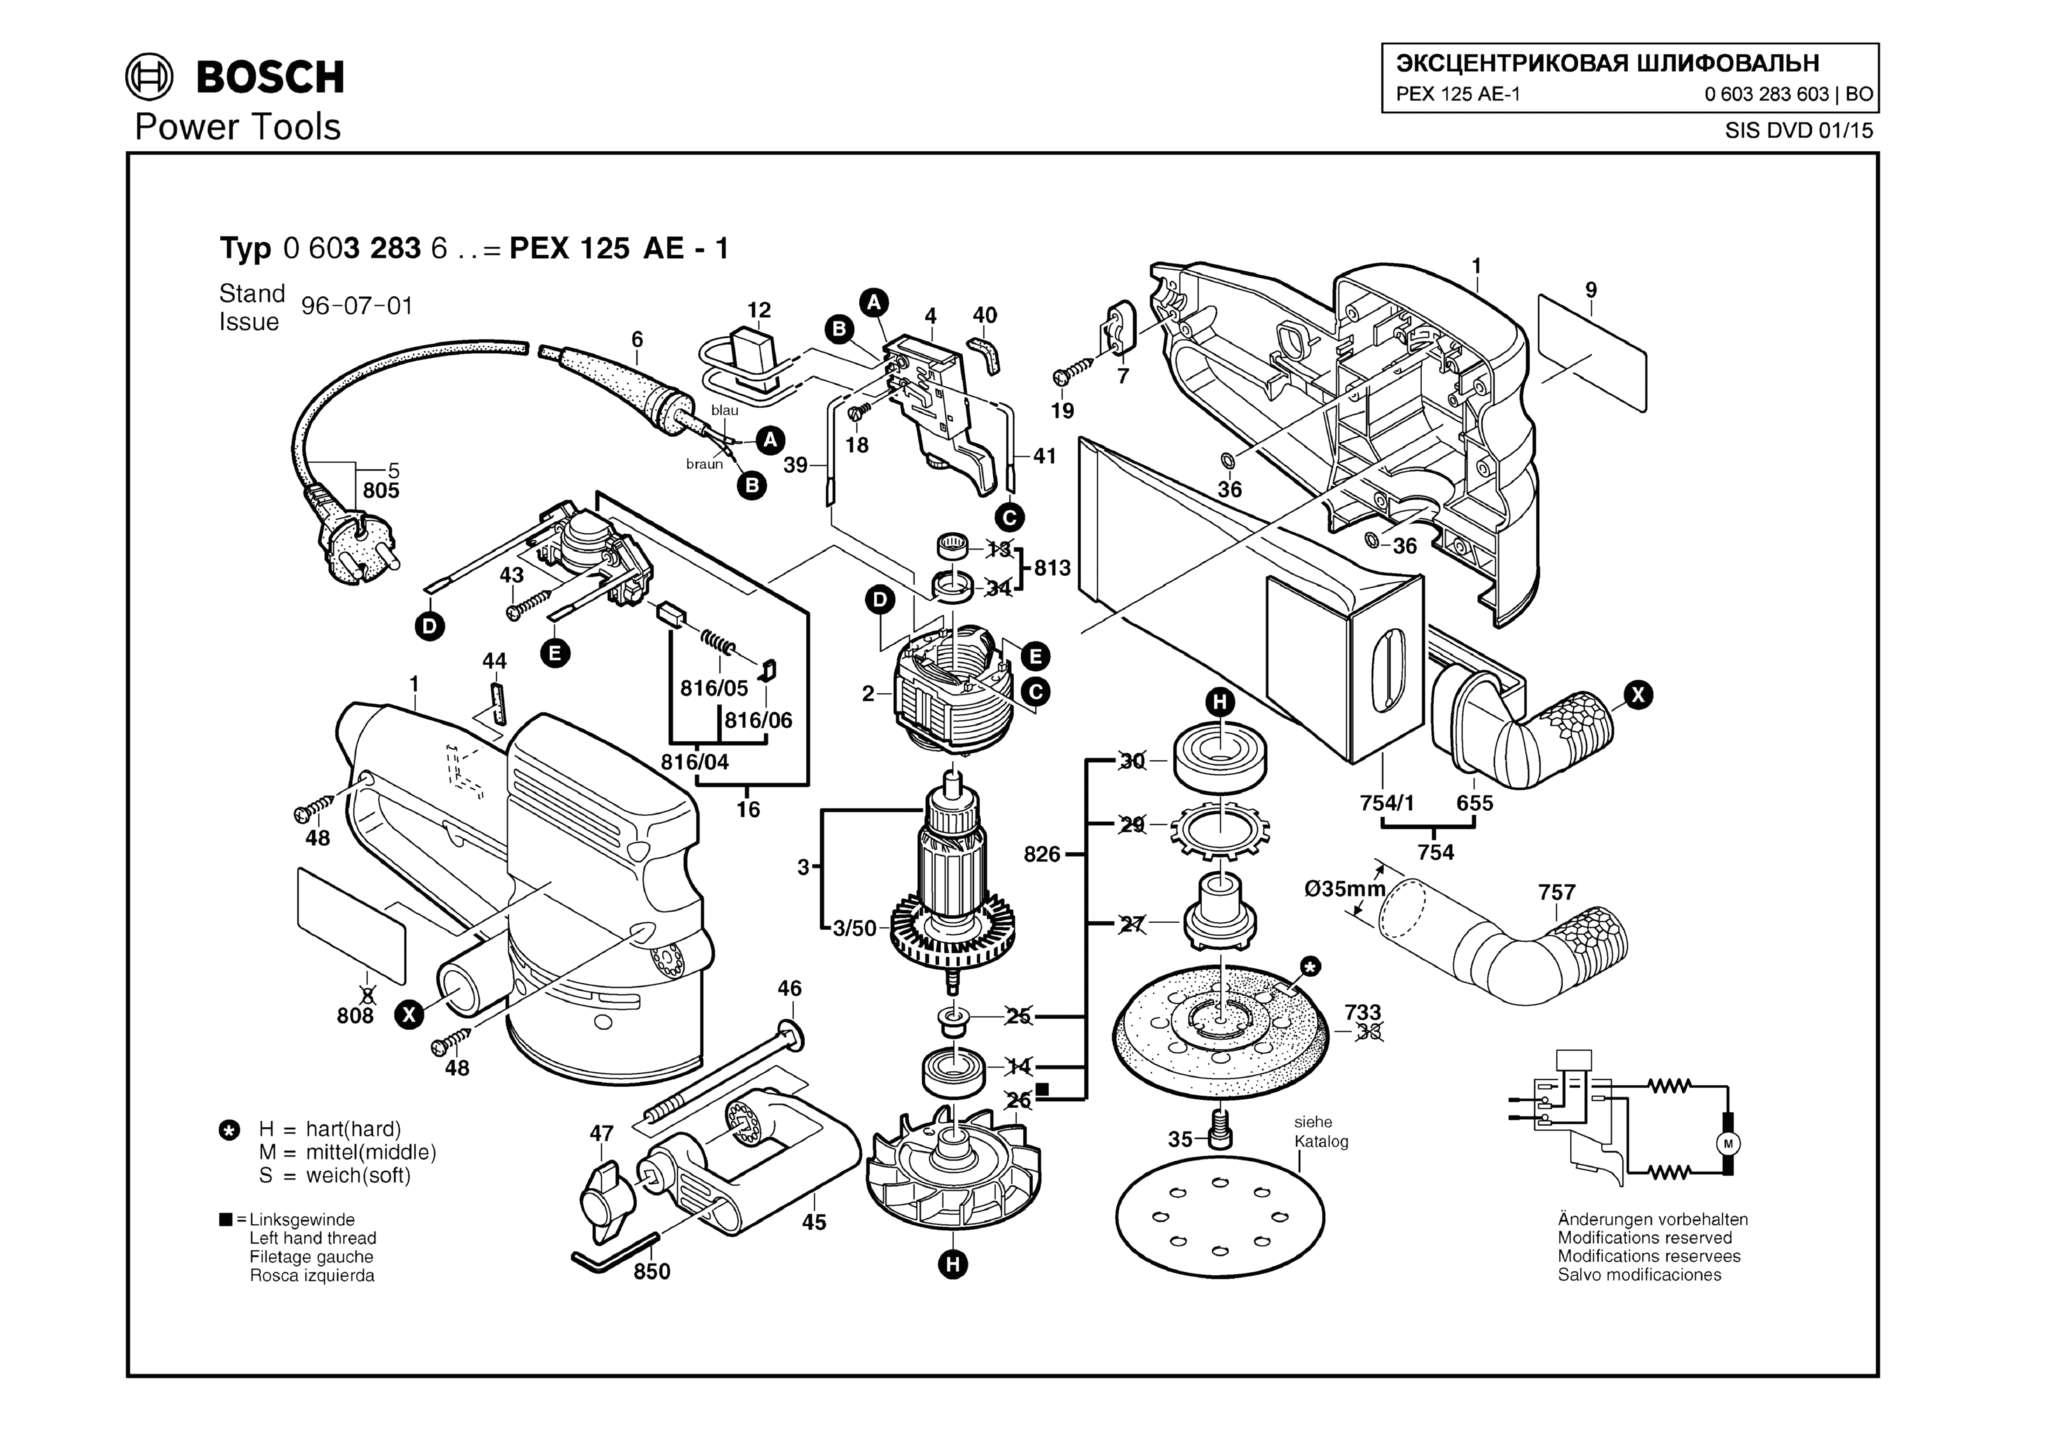 Запчасти, схема и деталировка Bosch PEX 125 AE-1 (ТИП 0603283603)